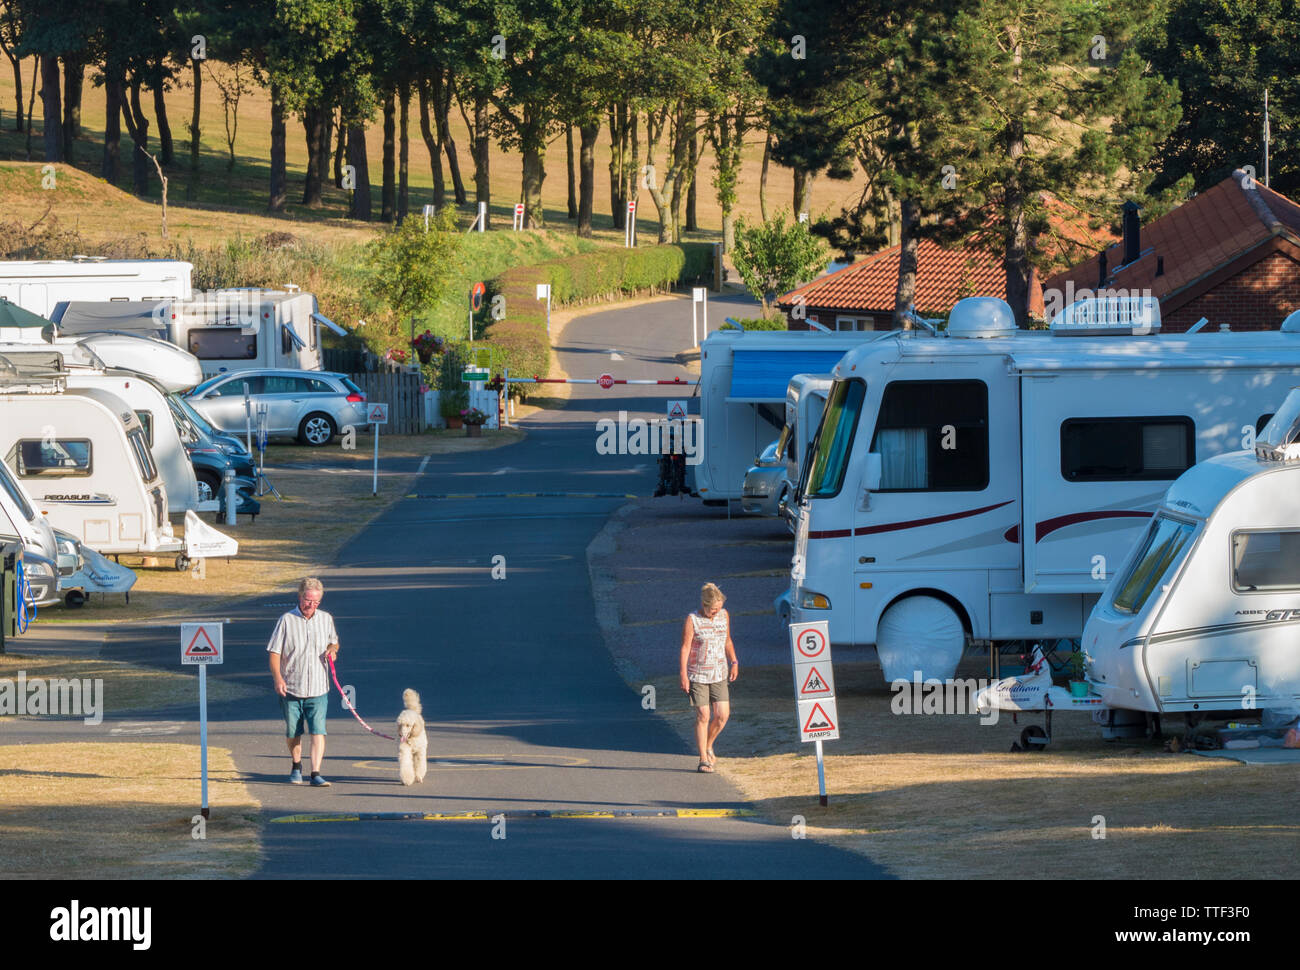 La gente a piedi attraverso un soleggiato caravan e camper Club sito (denominato Incleboro campi), West Runton, sulla Costa North Norfolk, Inghilterra, Regno Unito. Foto Stock